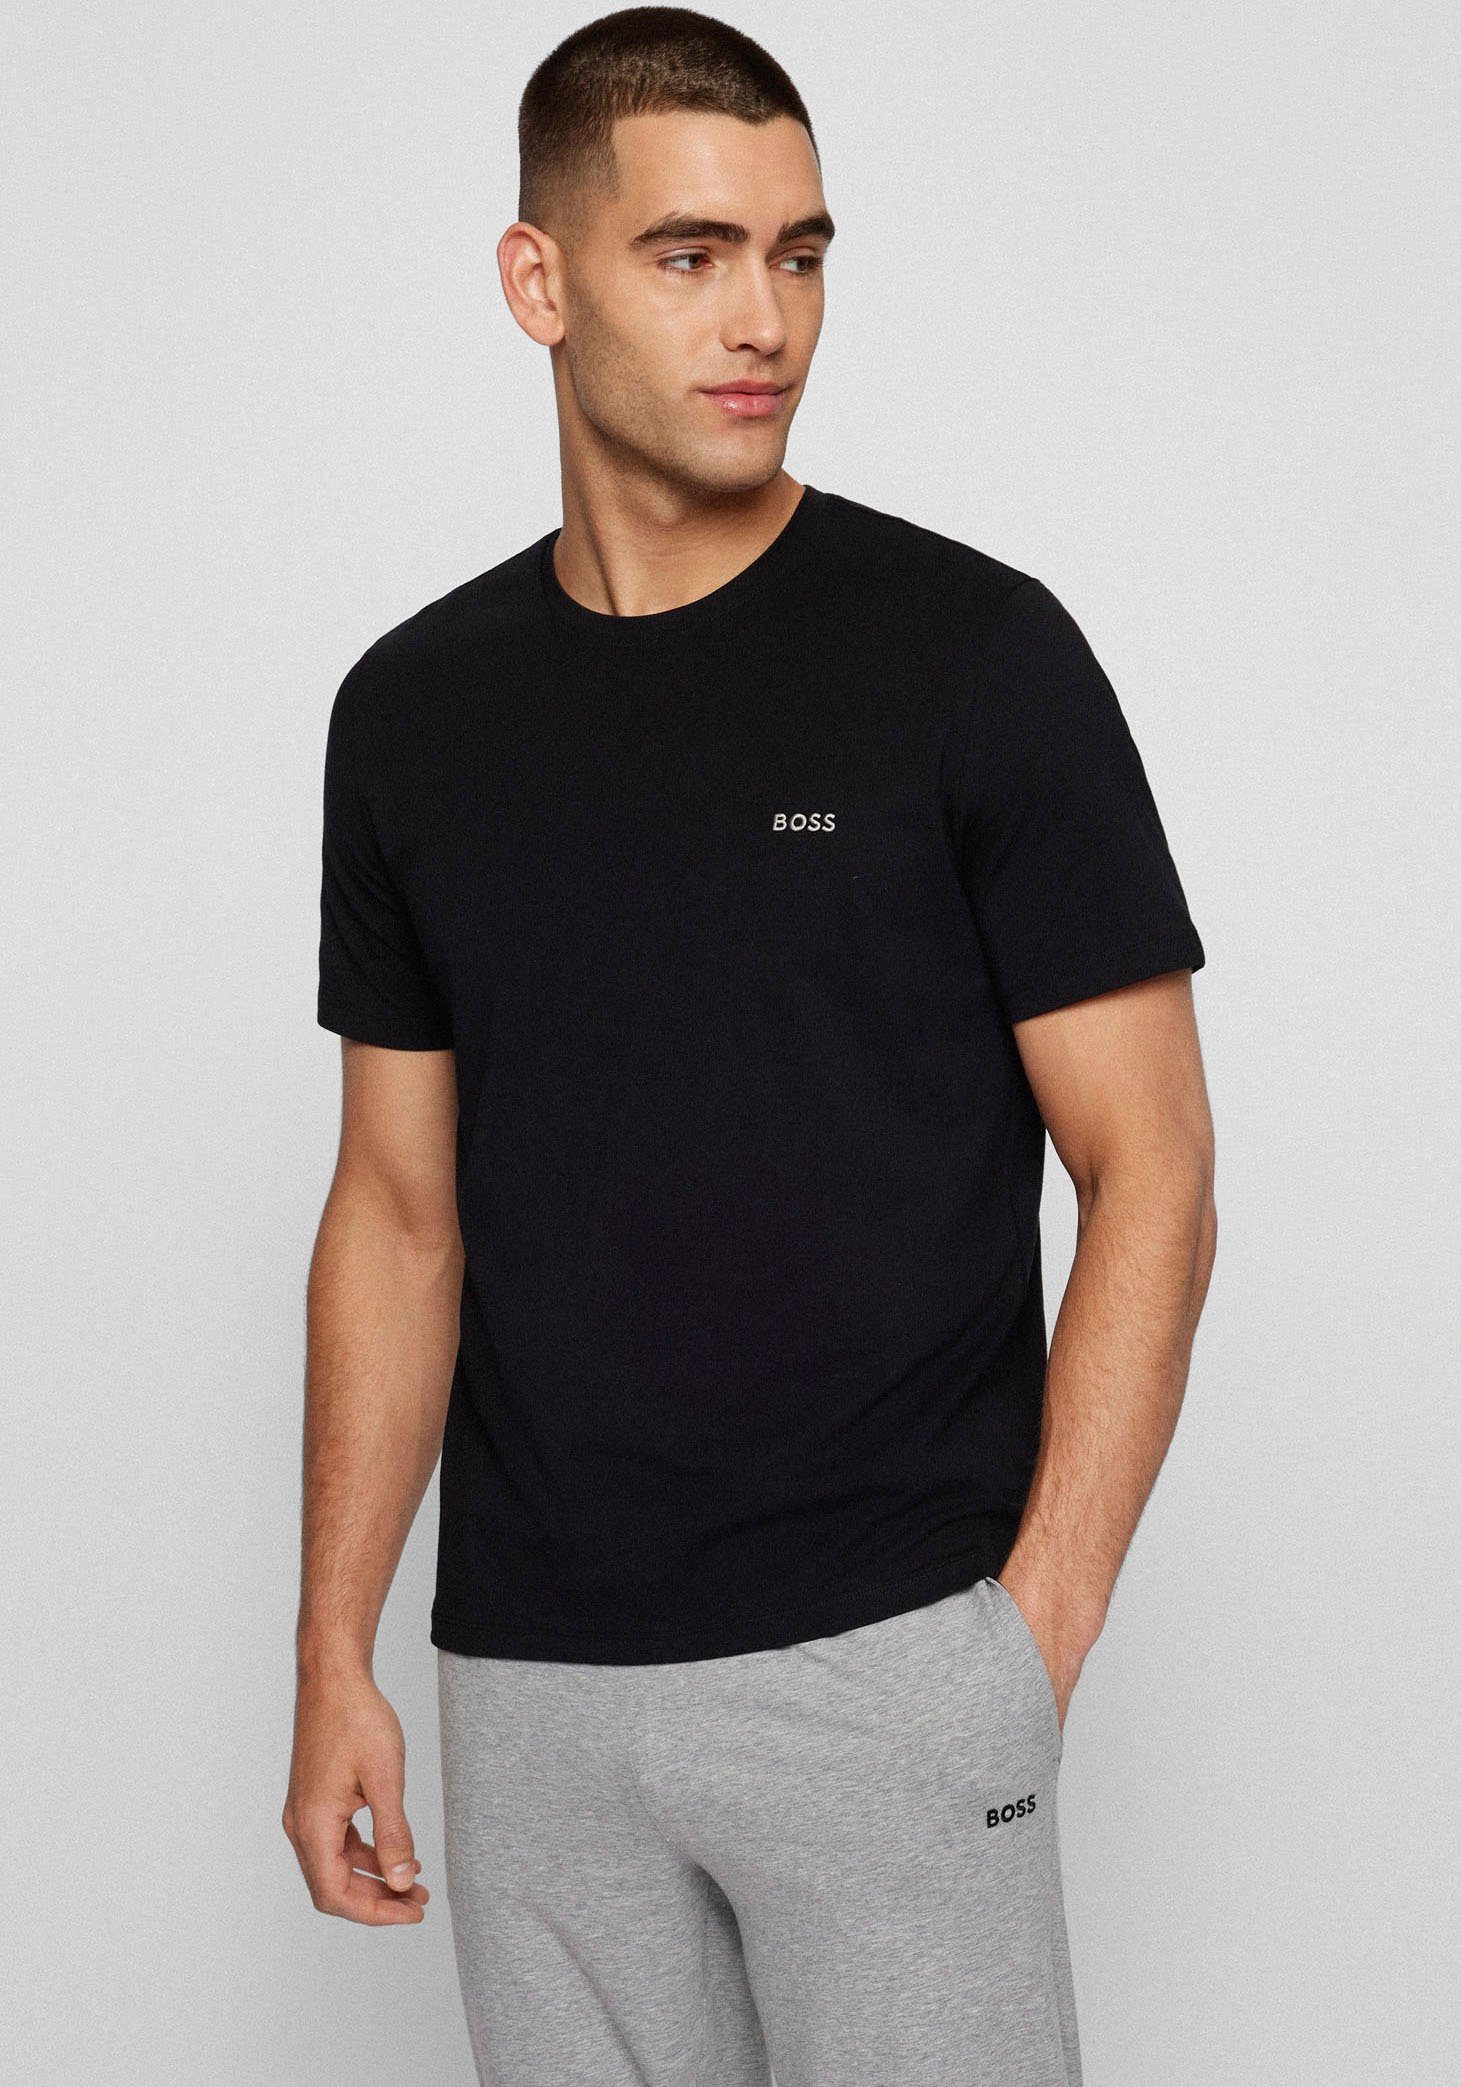 BOSS T-Shirt mit Brustlogo schwarz